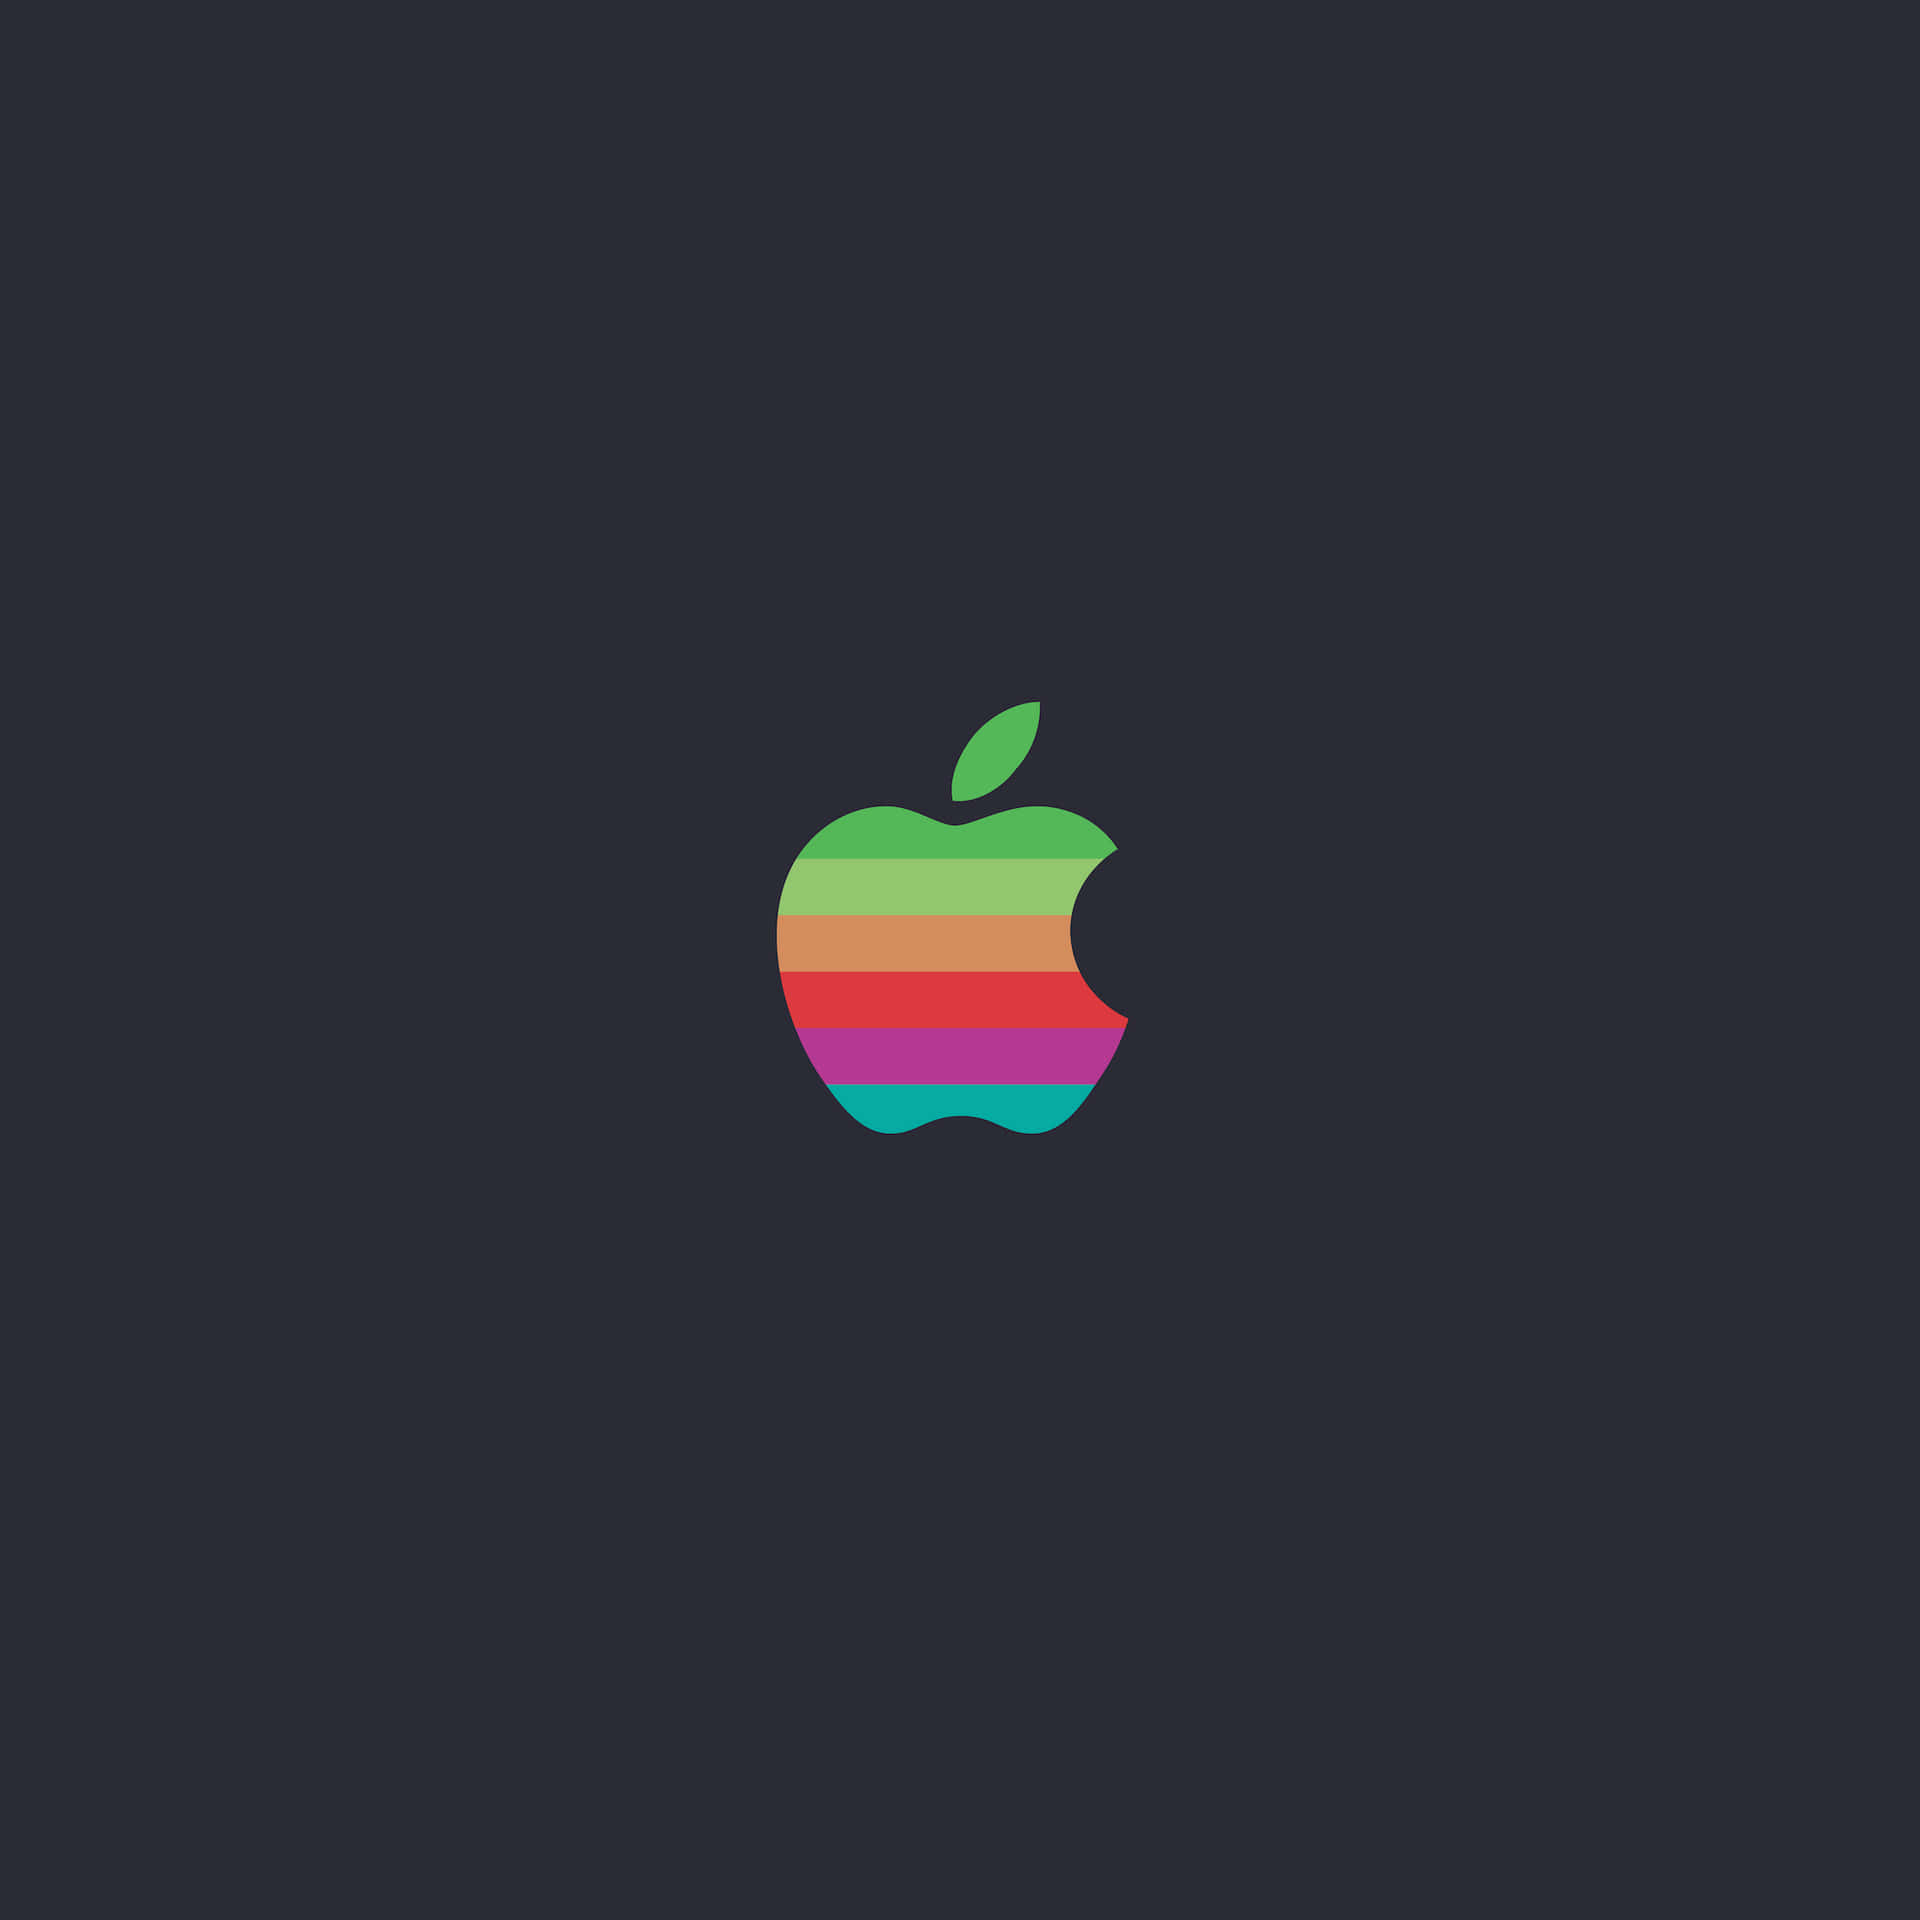 Enabstrakt Representation Av Det Ursprungliga Apple Inc-logotypen. Wallpaper